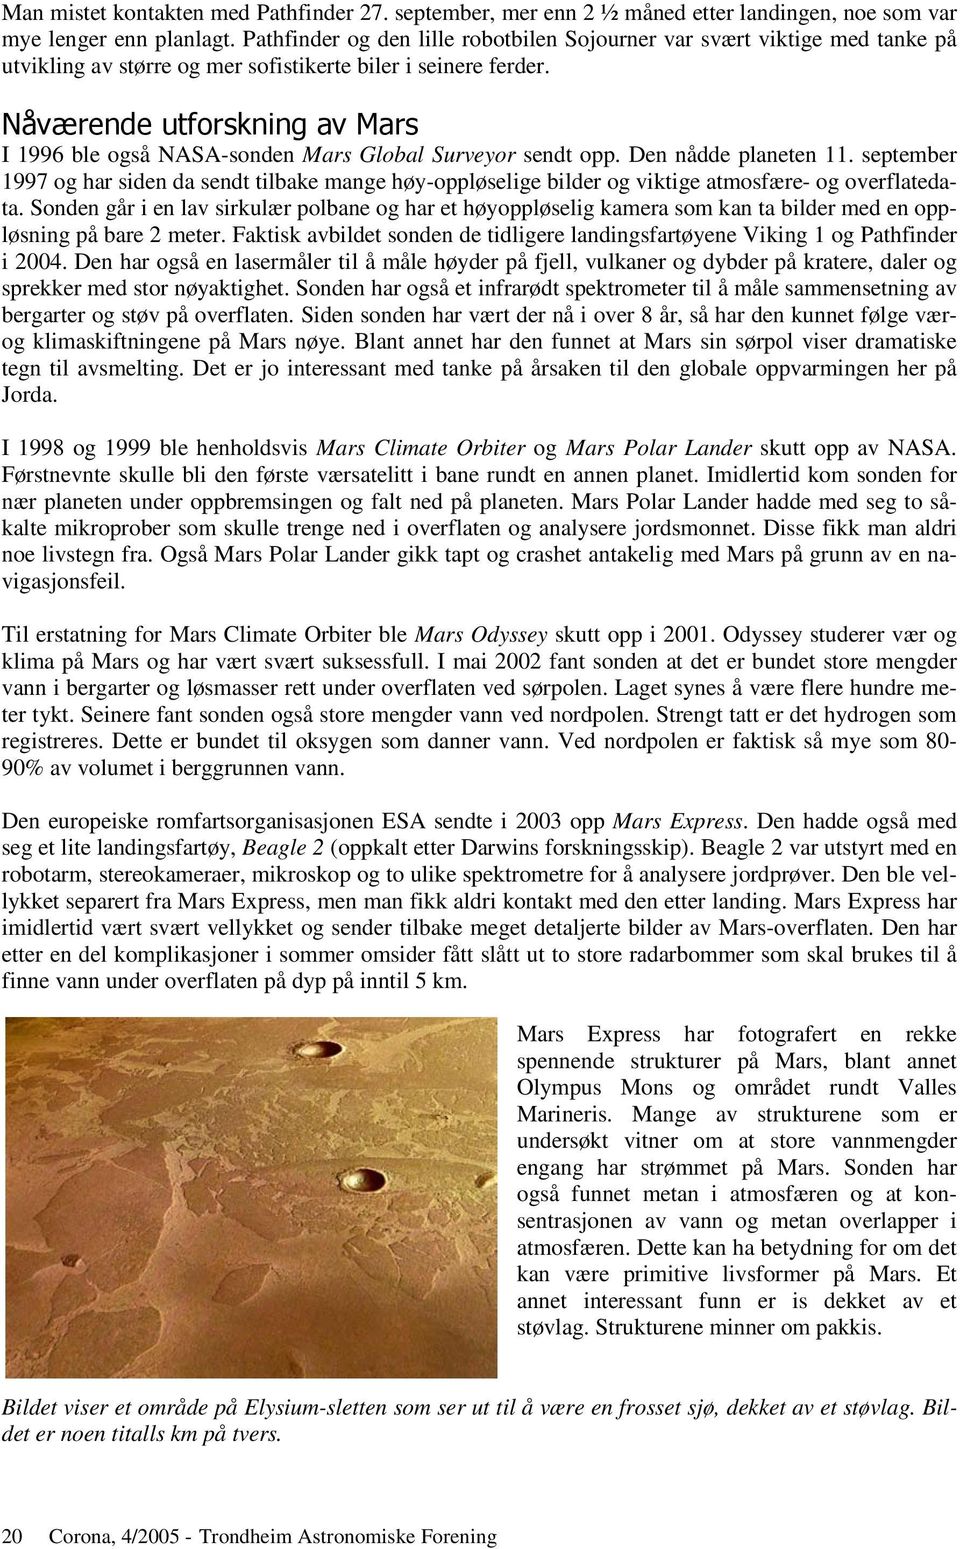 '($ # I 1996 ble også NASA-sonden Mars Global Surveyor sendt opp. Den nådde planeten 11.